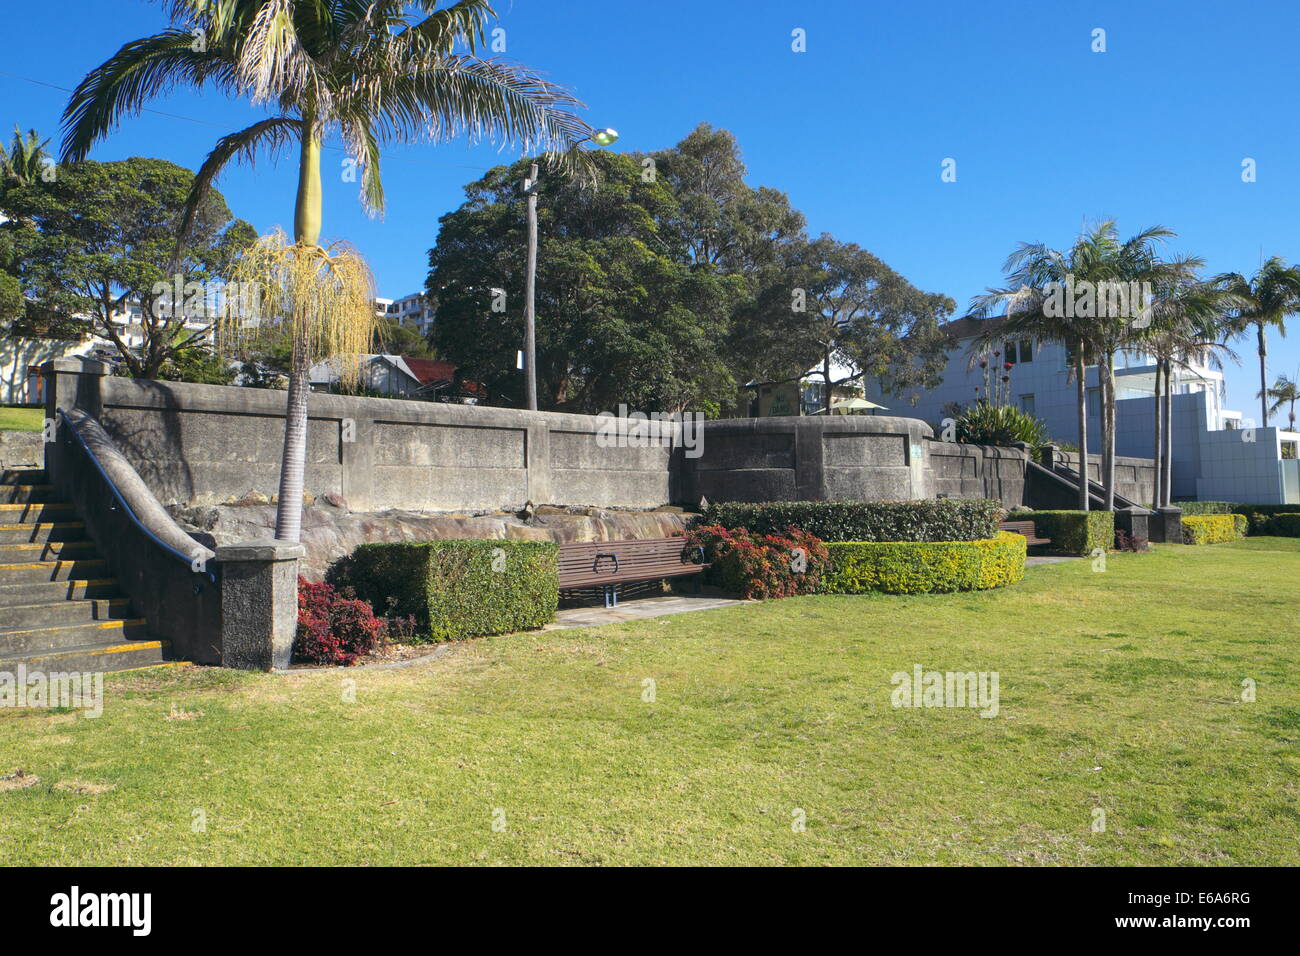 Balmain, Thornton parc sur le front de mer de la banlieue de Sydney Balmain, Sydney, australie Banque D'Images